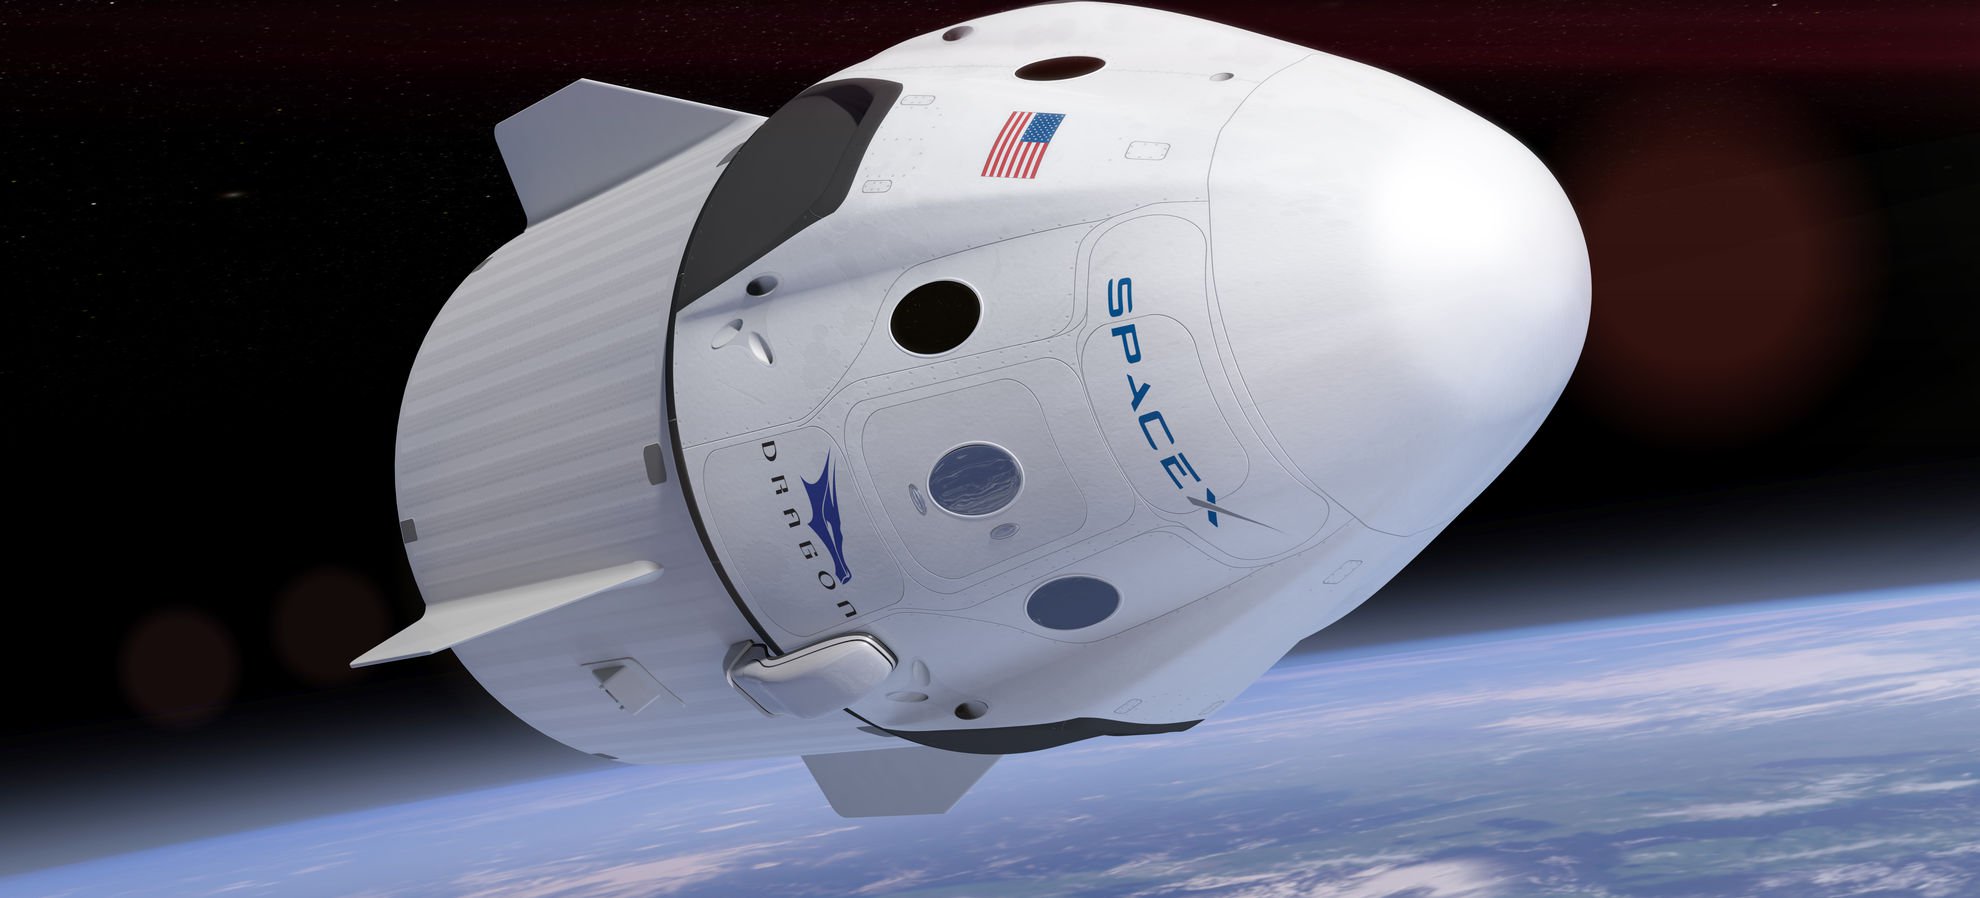 Boeing може фінансувати кампанію проти SpaceX